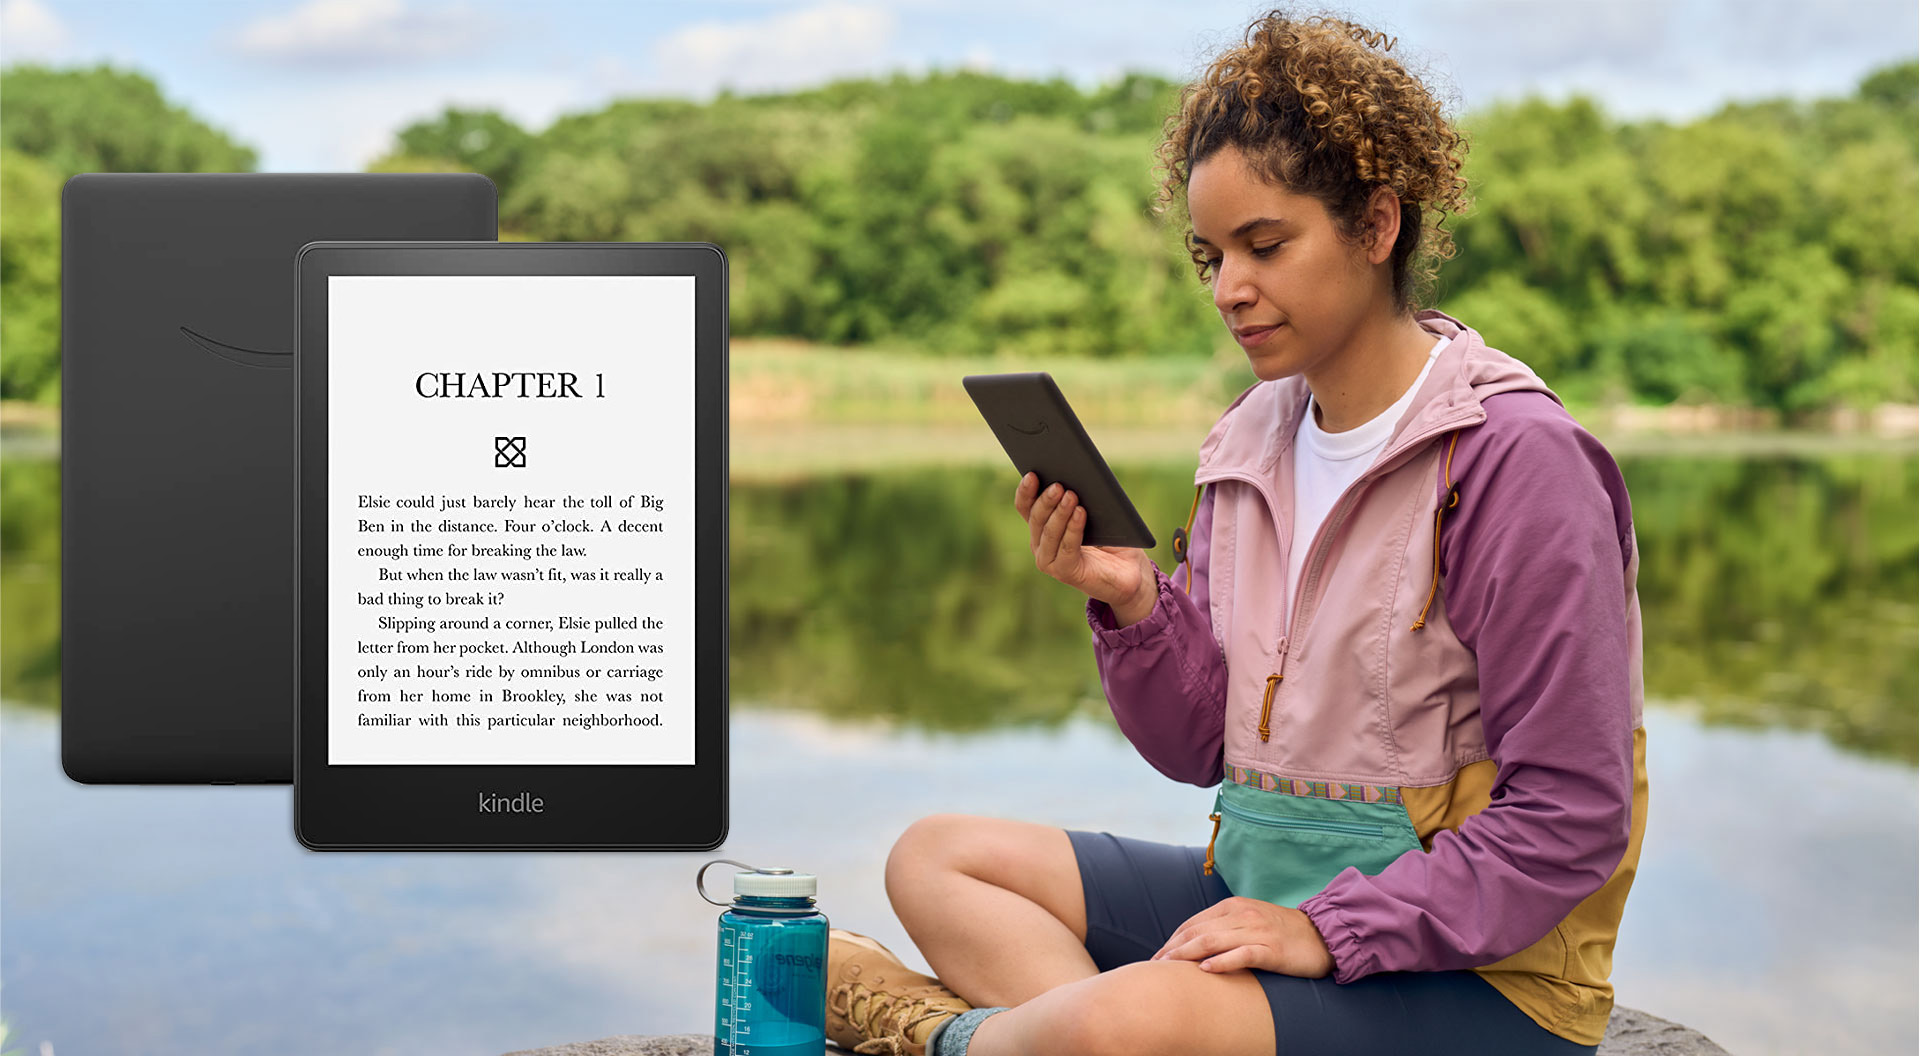 Усовершенствованный Amazon Kindle Paperwhite - теперь с экраном 6,8"